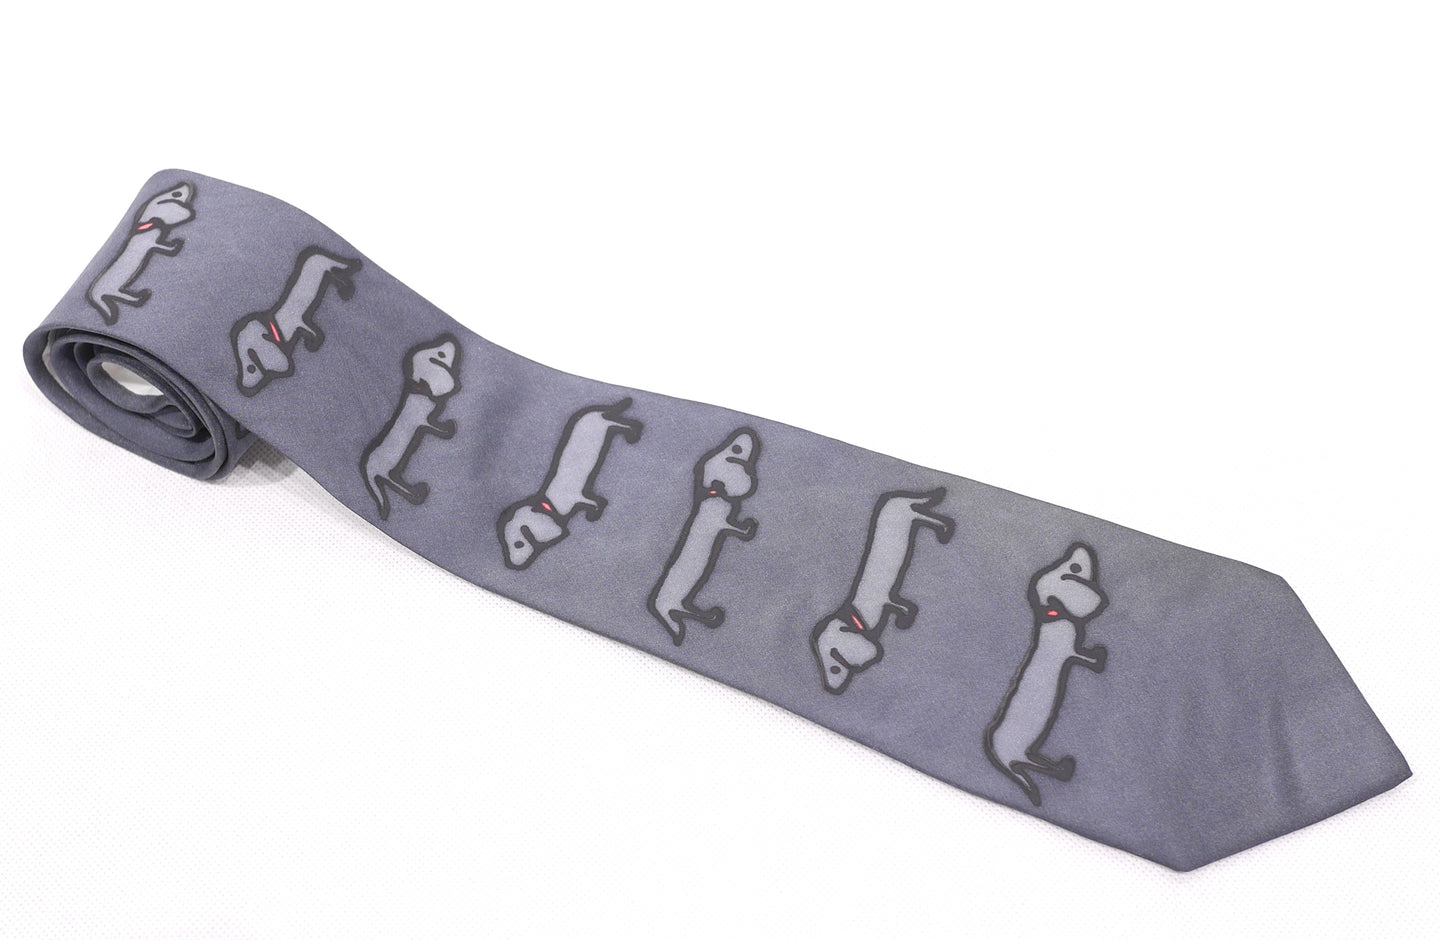 Handpainted silk necktie